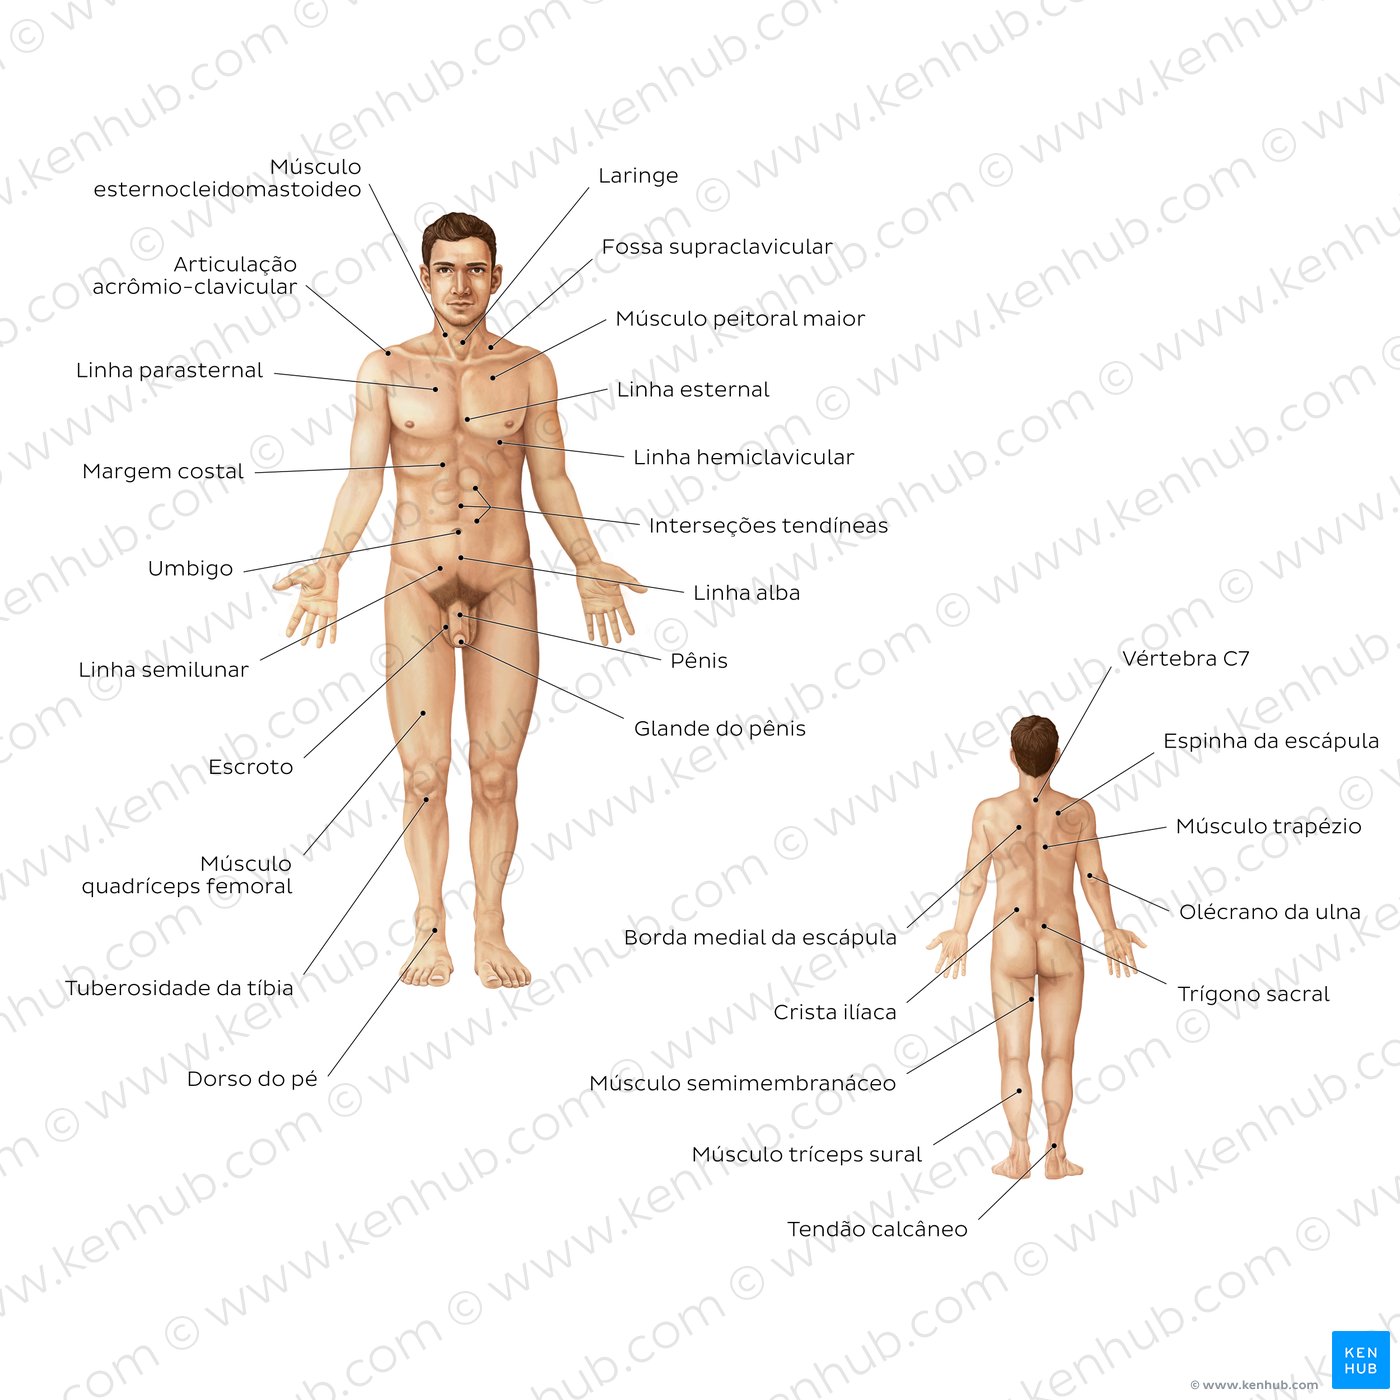 Anatomia de superfície masculina - vistas anterior e posterior